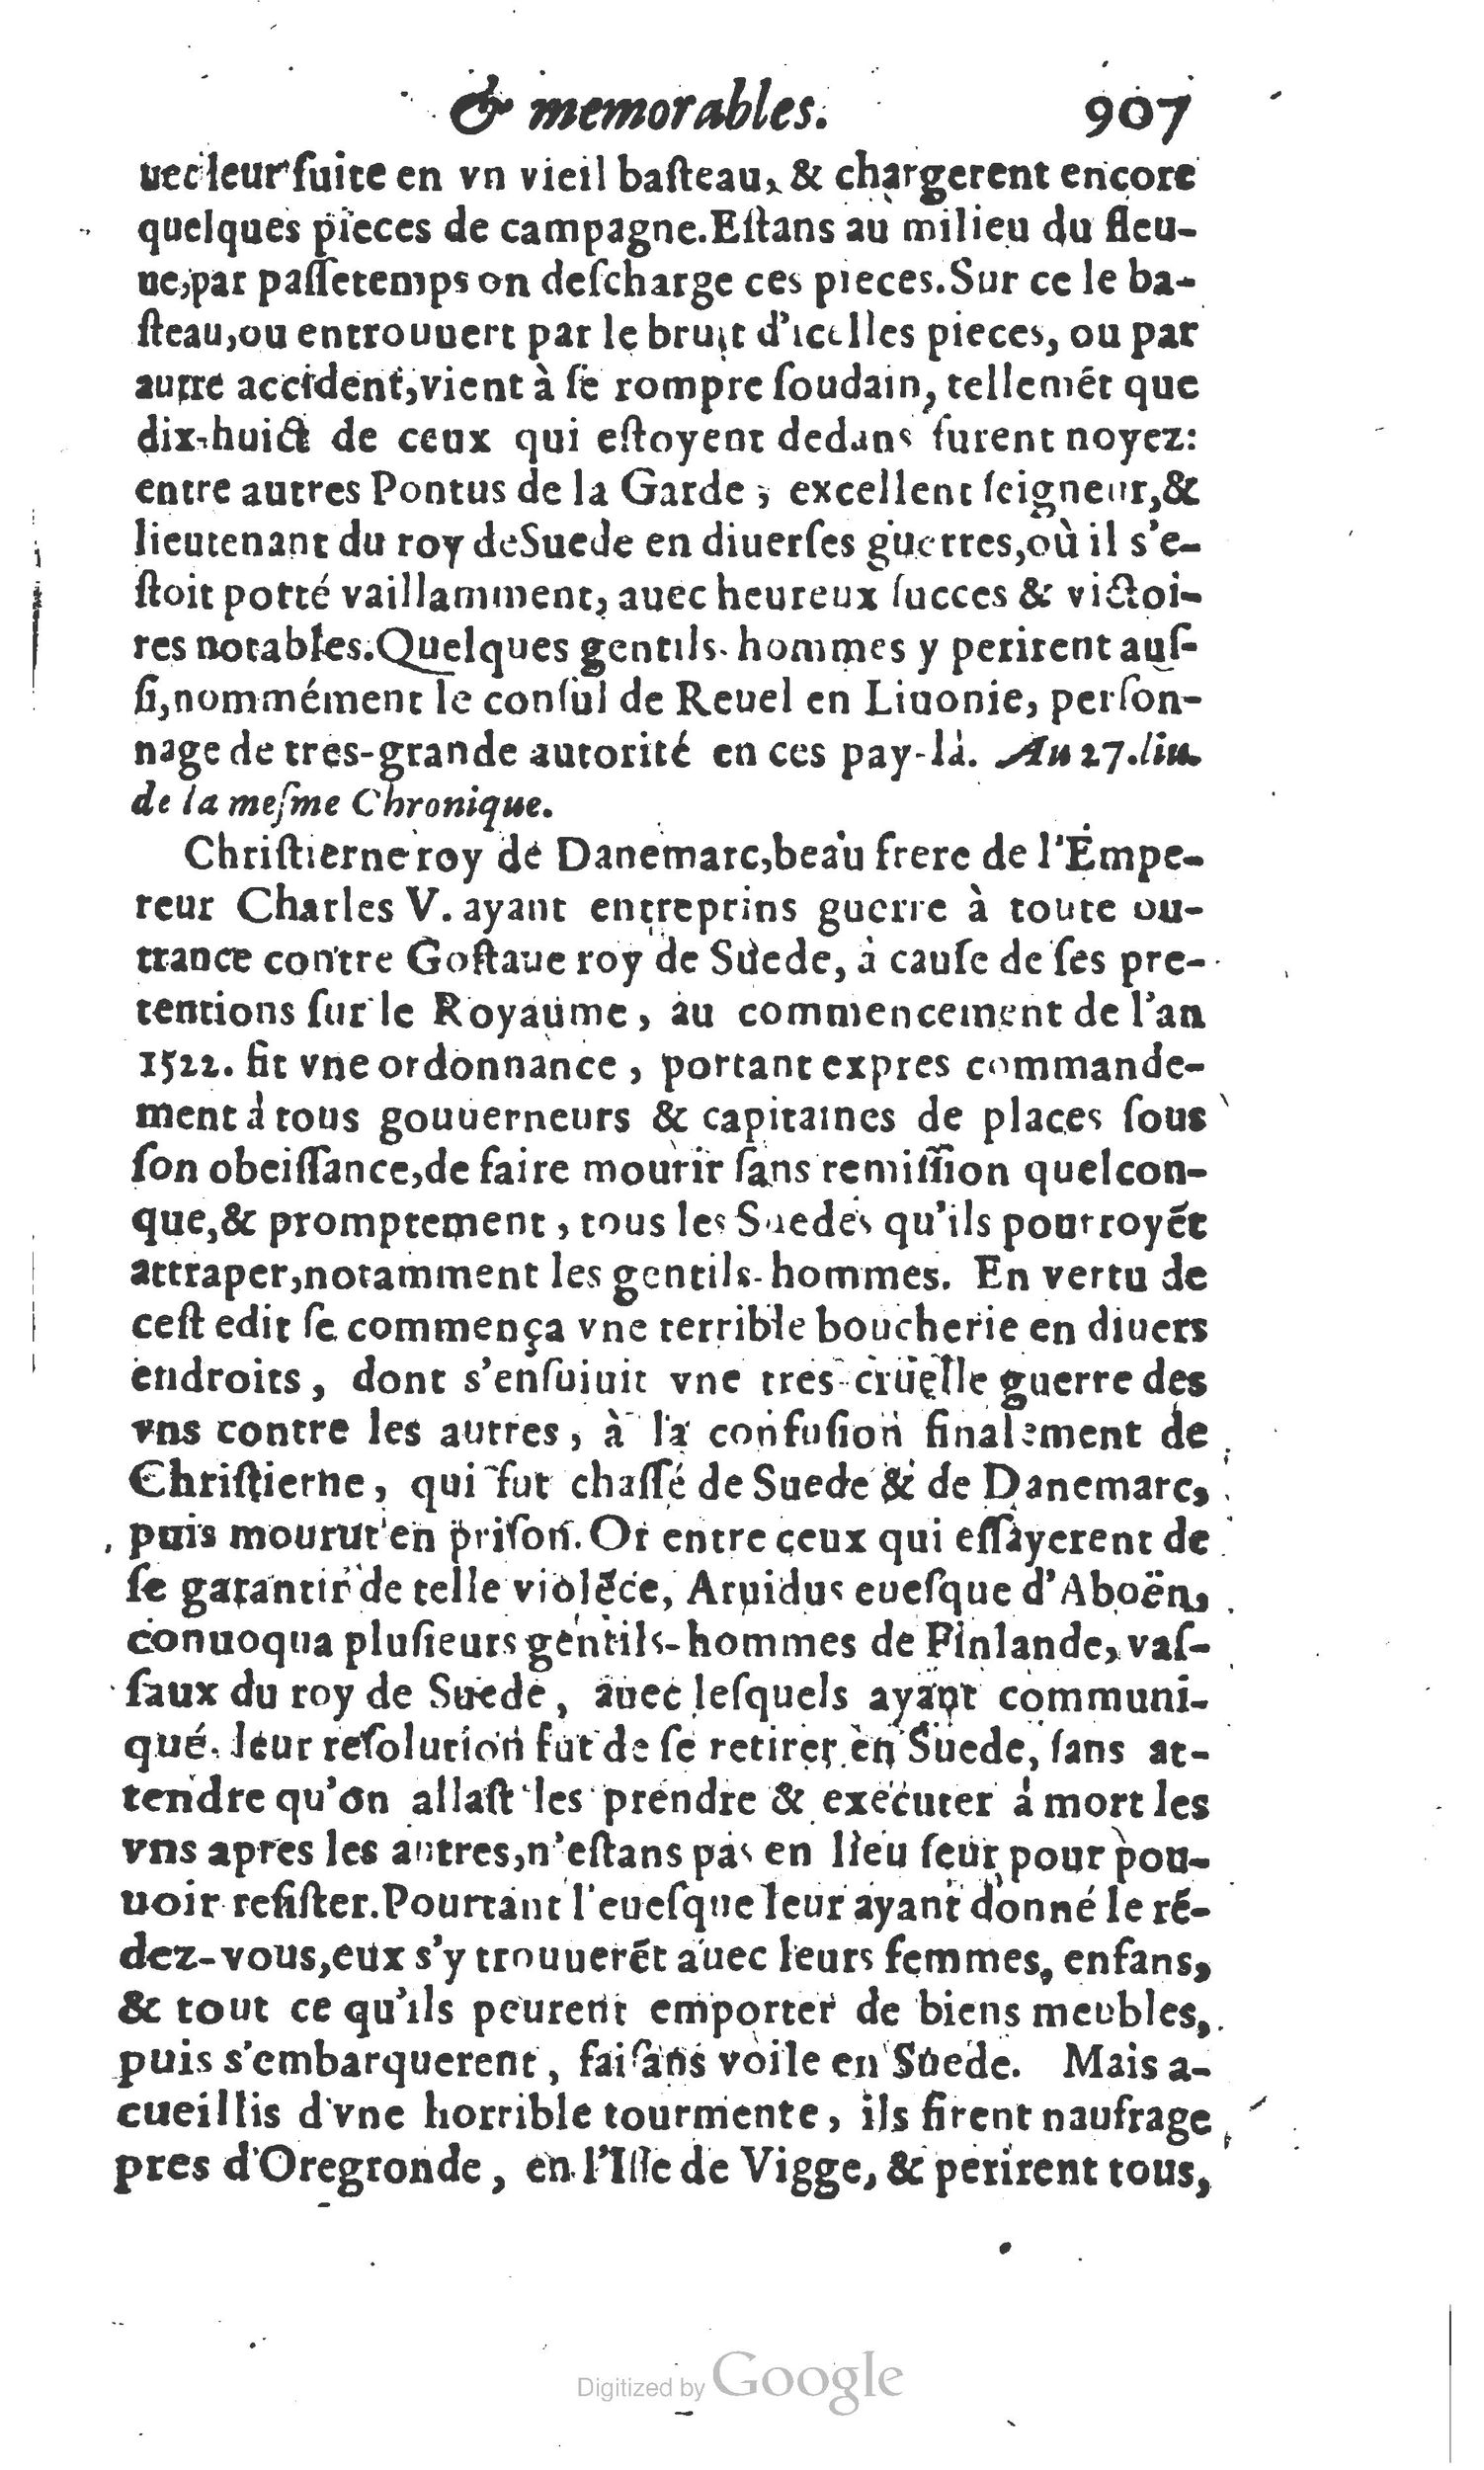 1610 Trésor d’histoires admirables et mémorables de nostre temps Marceau Princeton_Page_0928.jpg